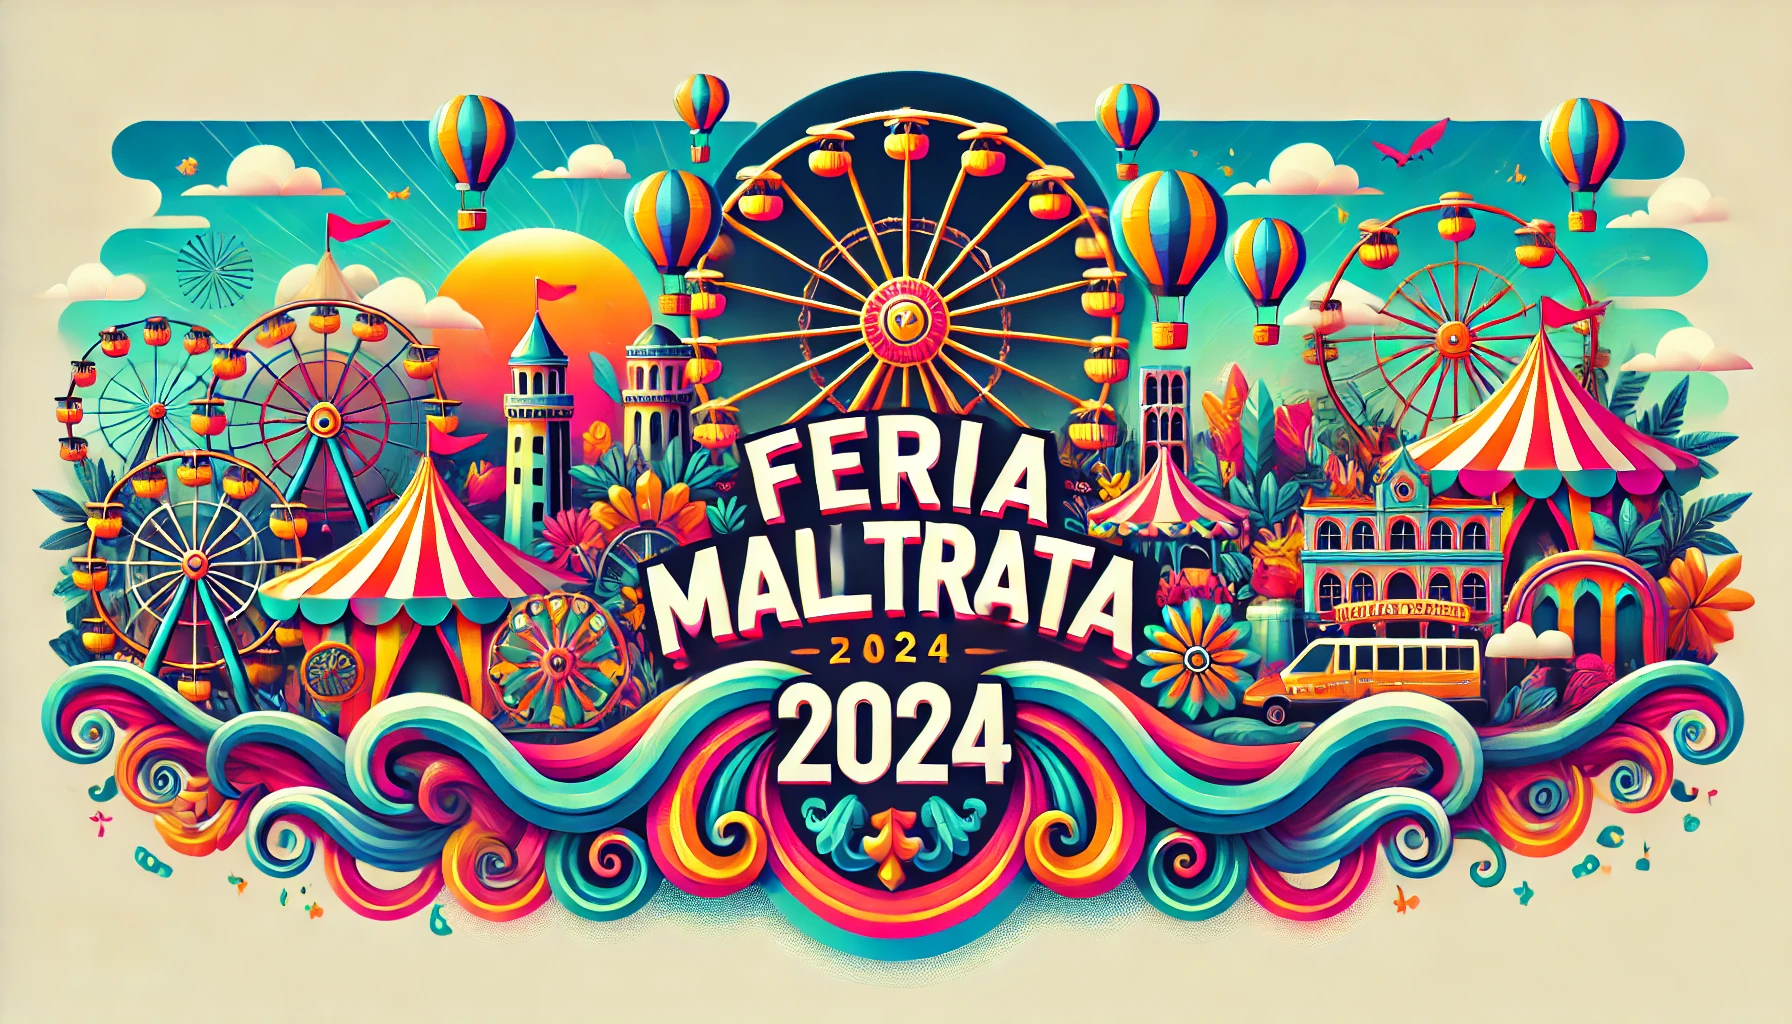 Actividades Culturales y Recreativas en la Feria Maltrata 2024